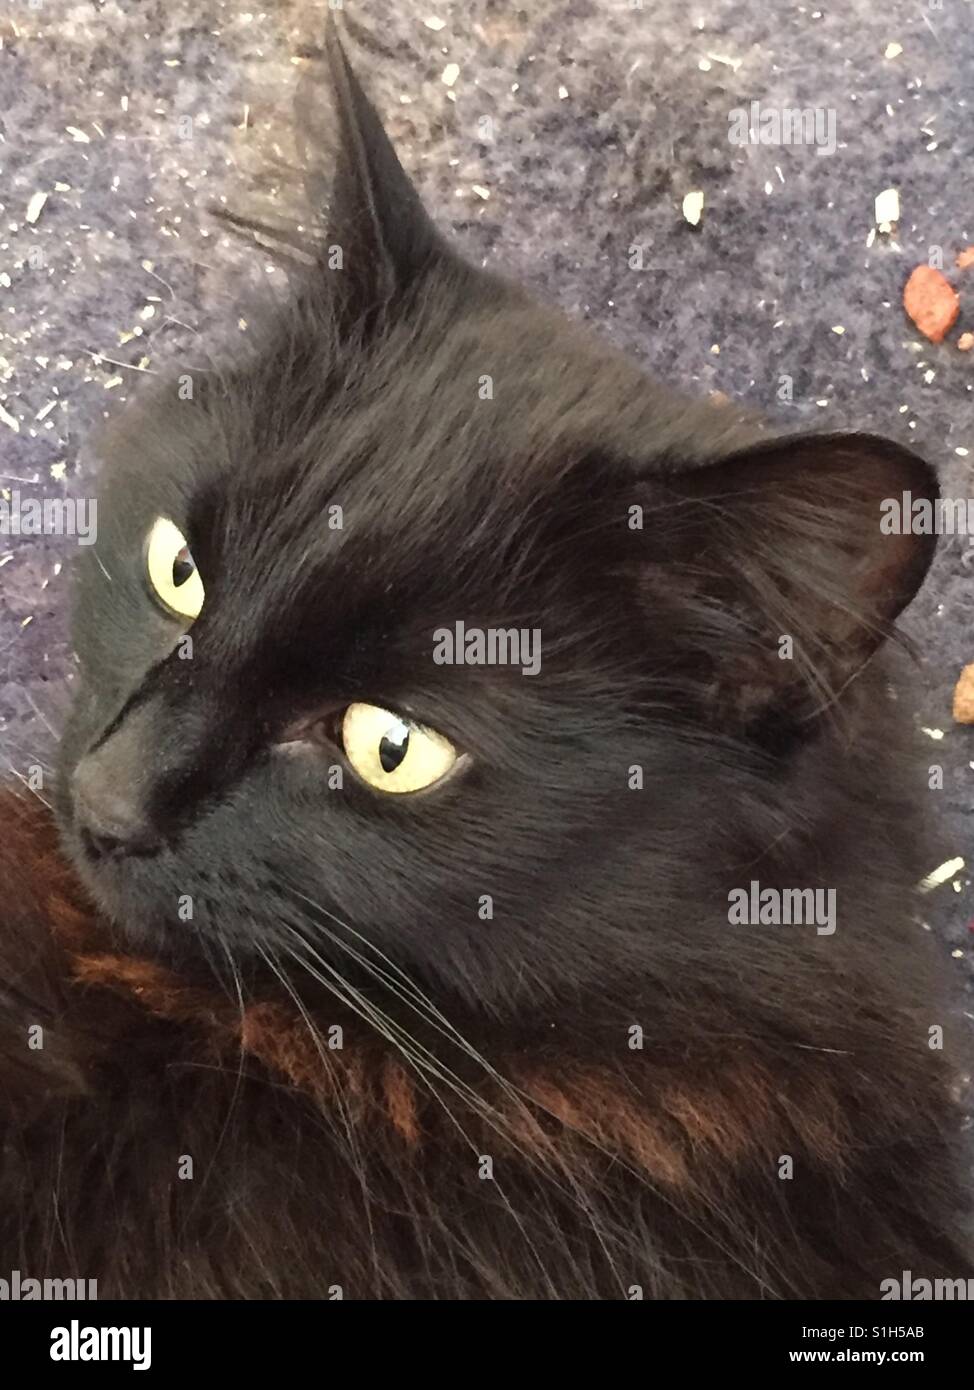 Capelli lunghi gatto nero Foto Stock